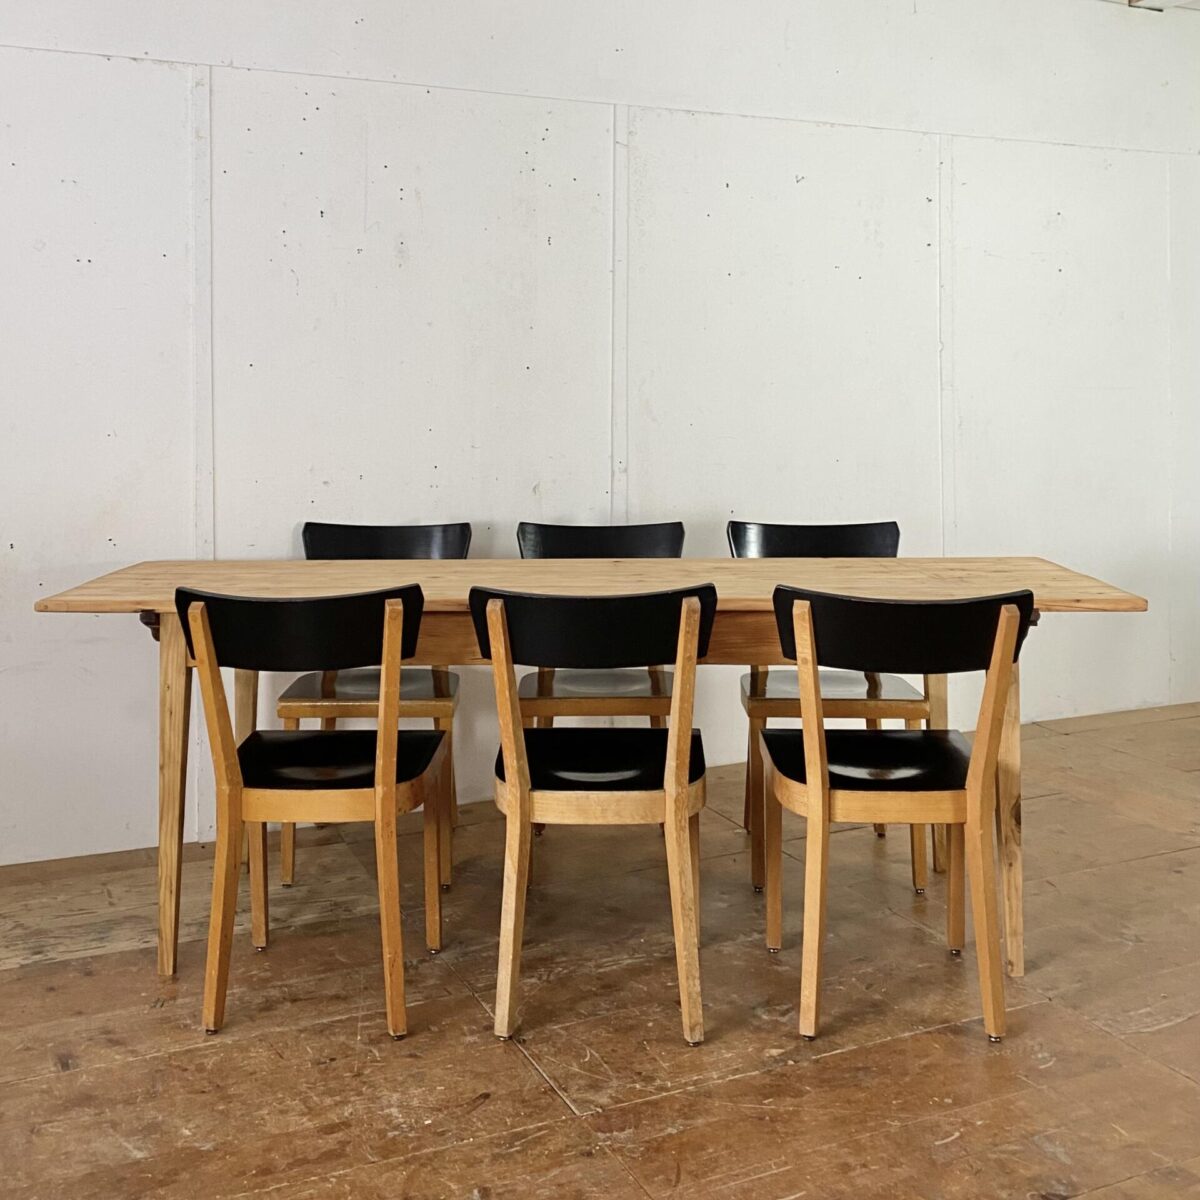 Deuxieme.shop alter Holztisch Tannenholz Biedermeiertisch. 224x68cm Höhe 75.5cm. Der Tisch ist in stabilem aufbereiteten Zustand, die Holz Oberflächen sind geschliffen und mit Naturöl behandelt. Das Tischblatt wird mittels Holzzapfen, durch die Gratleisten, mit dem Unterbau verbunden. An dem Tisch finden bis zu 8 Personen Platz.